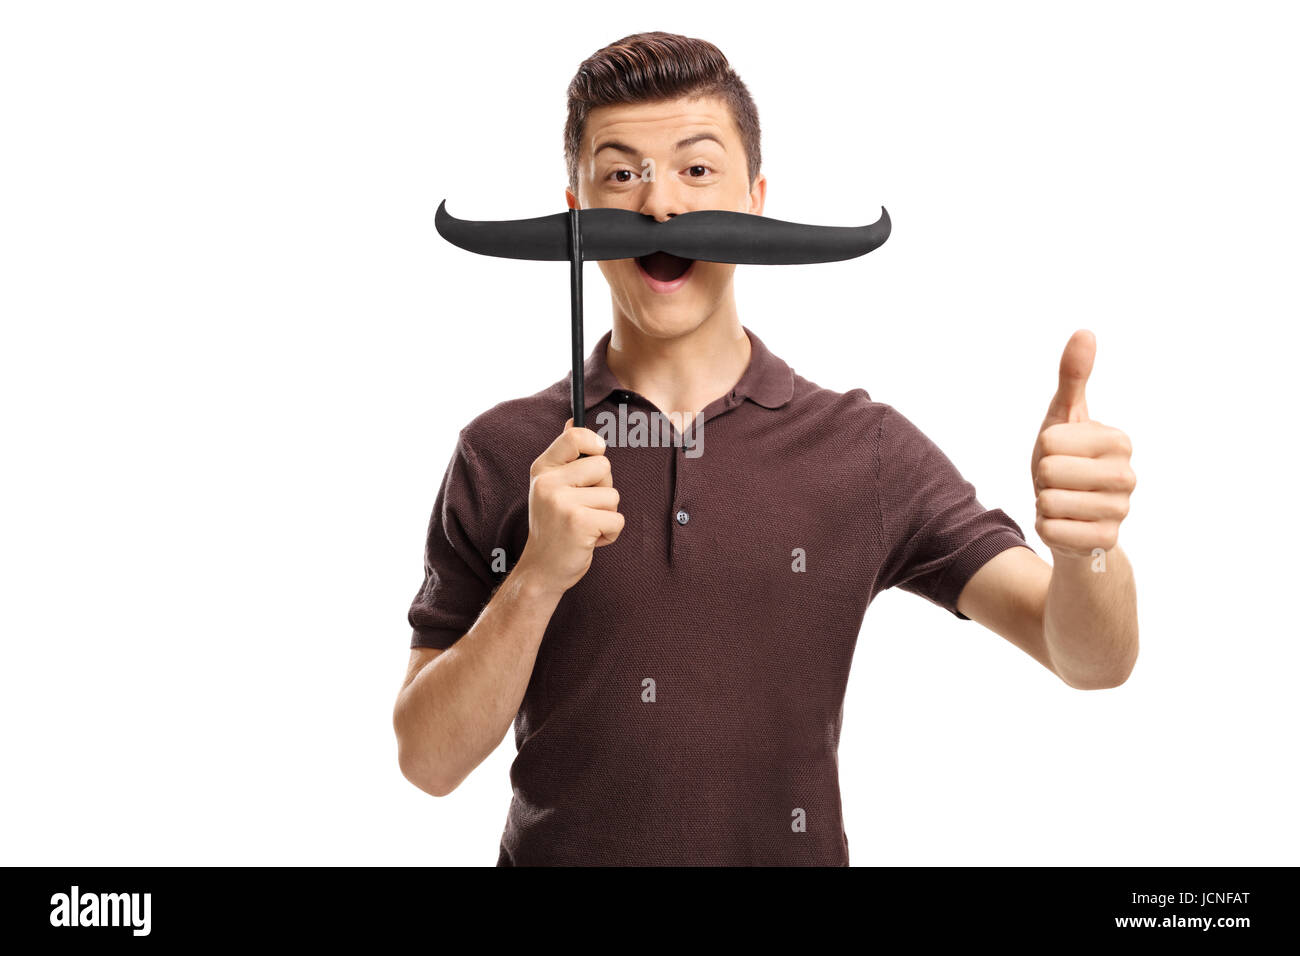 Teenage boy with fake moustache faisant un geste vers le pouce isolé sur fond blanc Banque D'Images